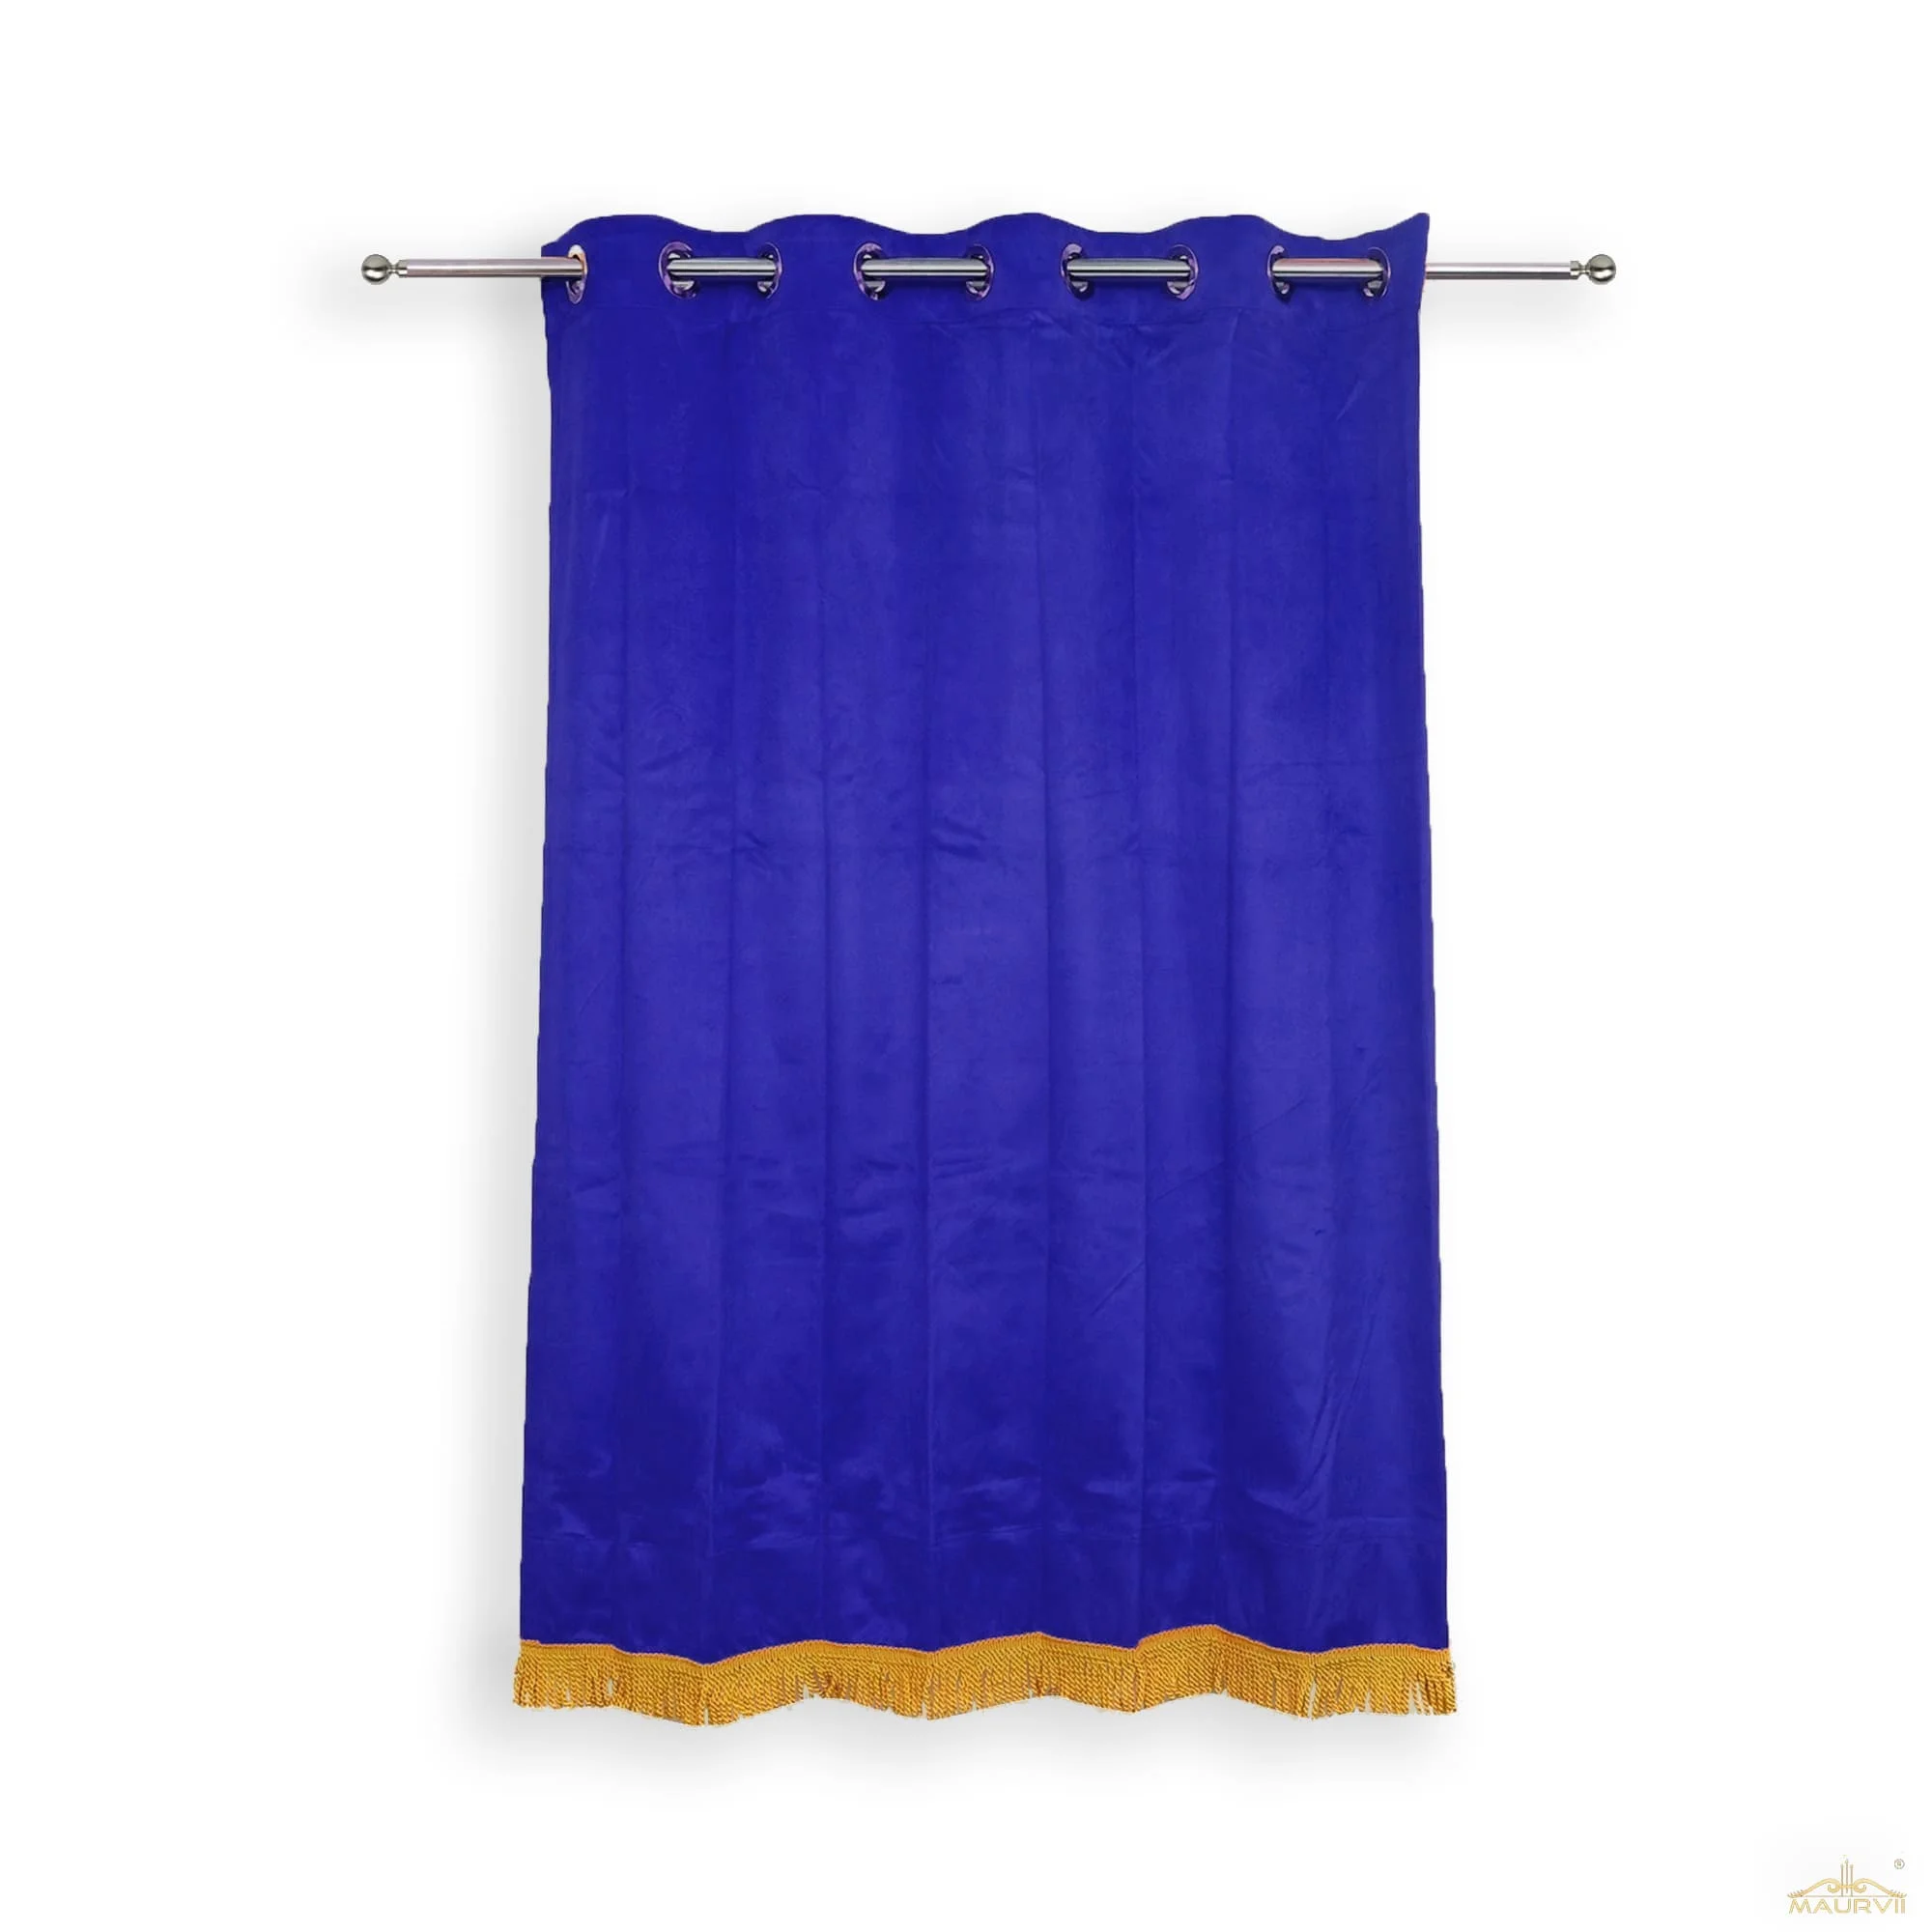 Blue velvet curtains for sale